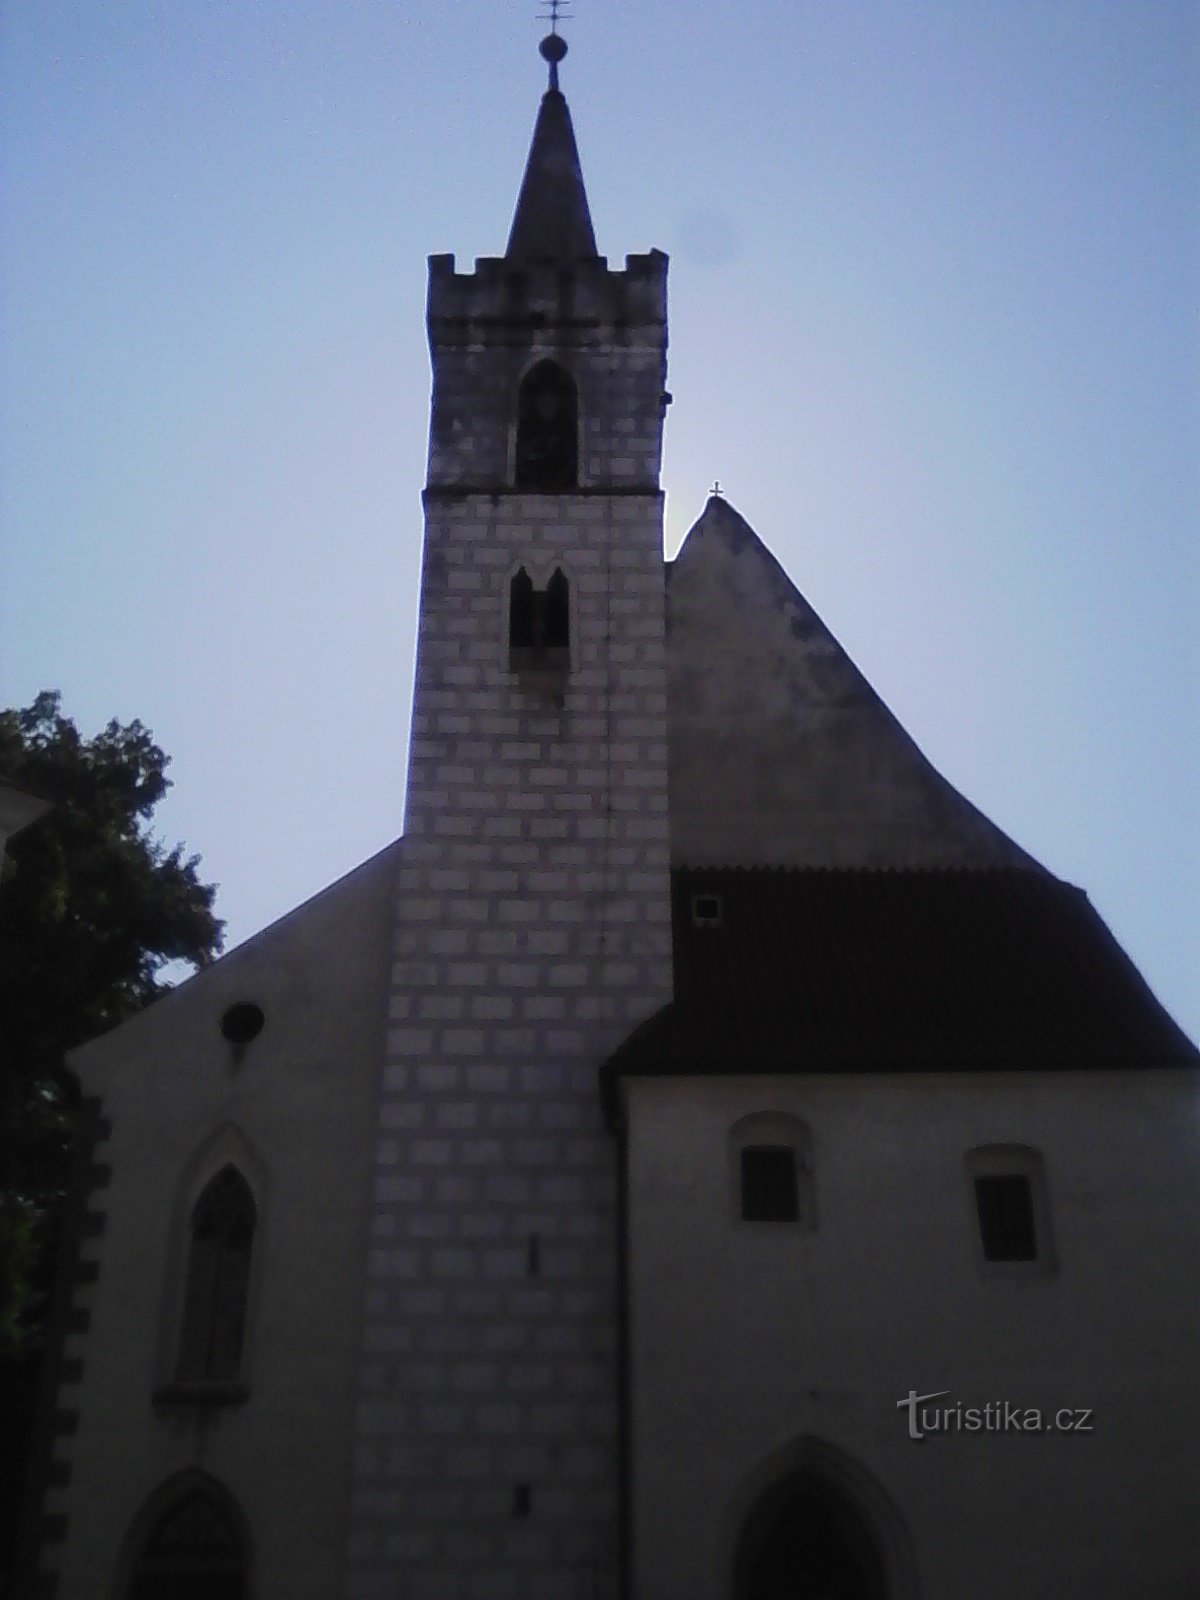 2. Biserica Sf. Martin din Sedlčany este construită în stilul gotic timpuriu. Usuzu